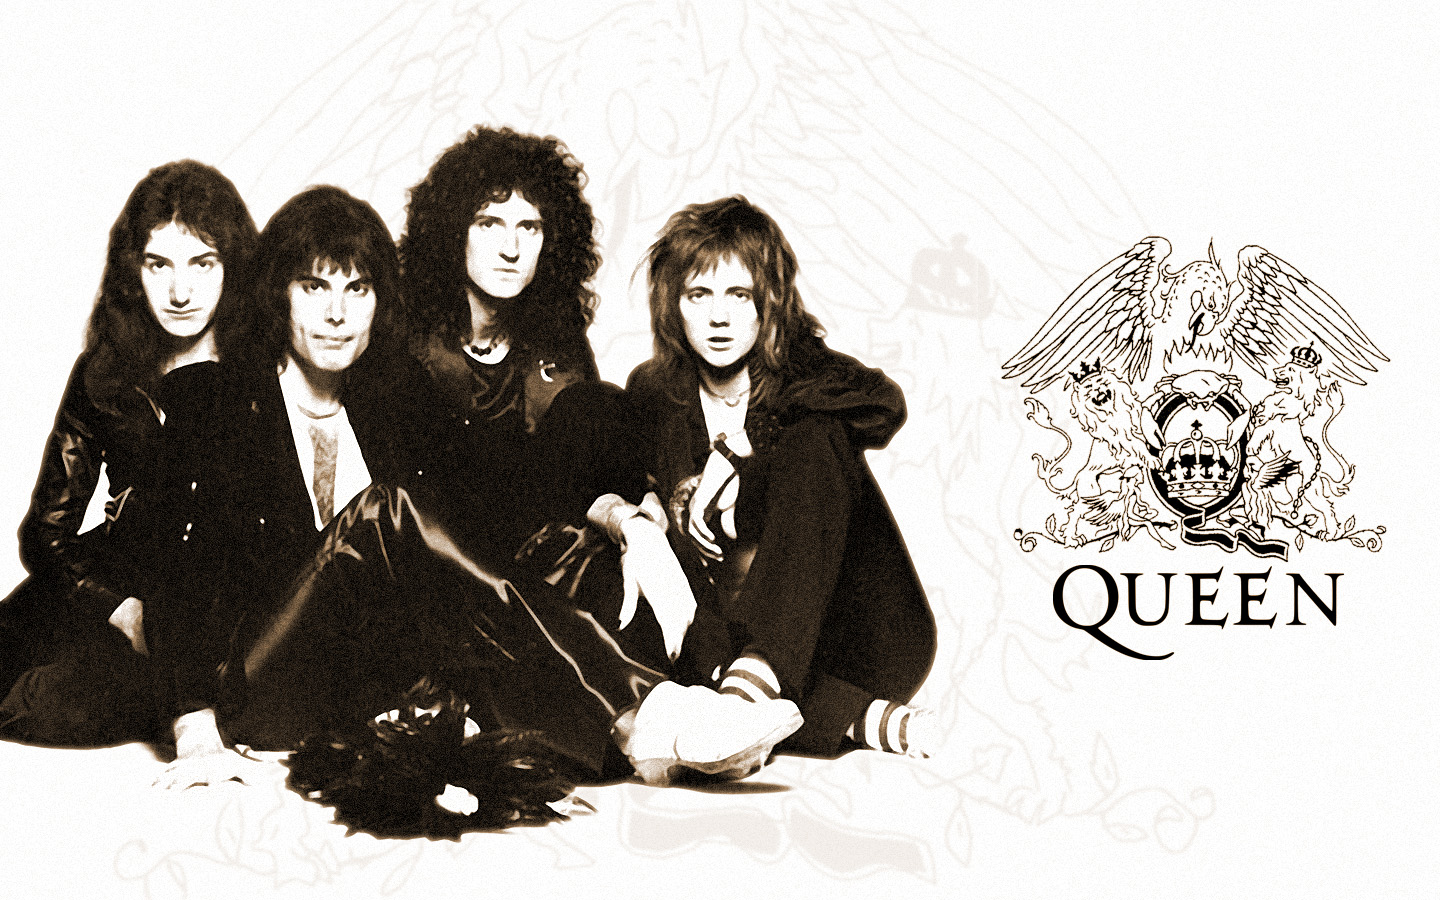 Bạn là fan cuồng của Queen? Hãy khoe với bạn bè các hình ảnh của nhóm nhạc huyền thoại này để chứng tỏ đẳng cấp của mình. Hãy xem những bức hình đẹp và chất lượng để thỏa mãn đam mê của mình. 